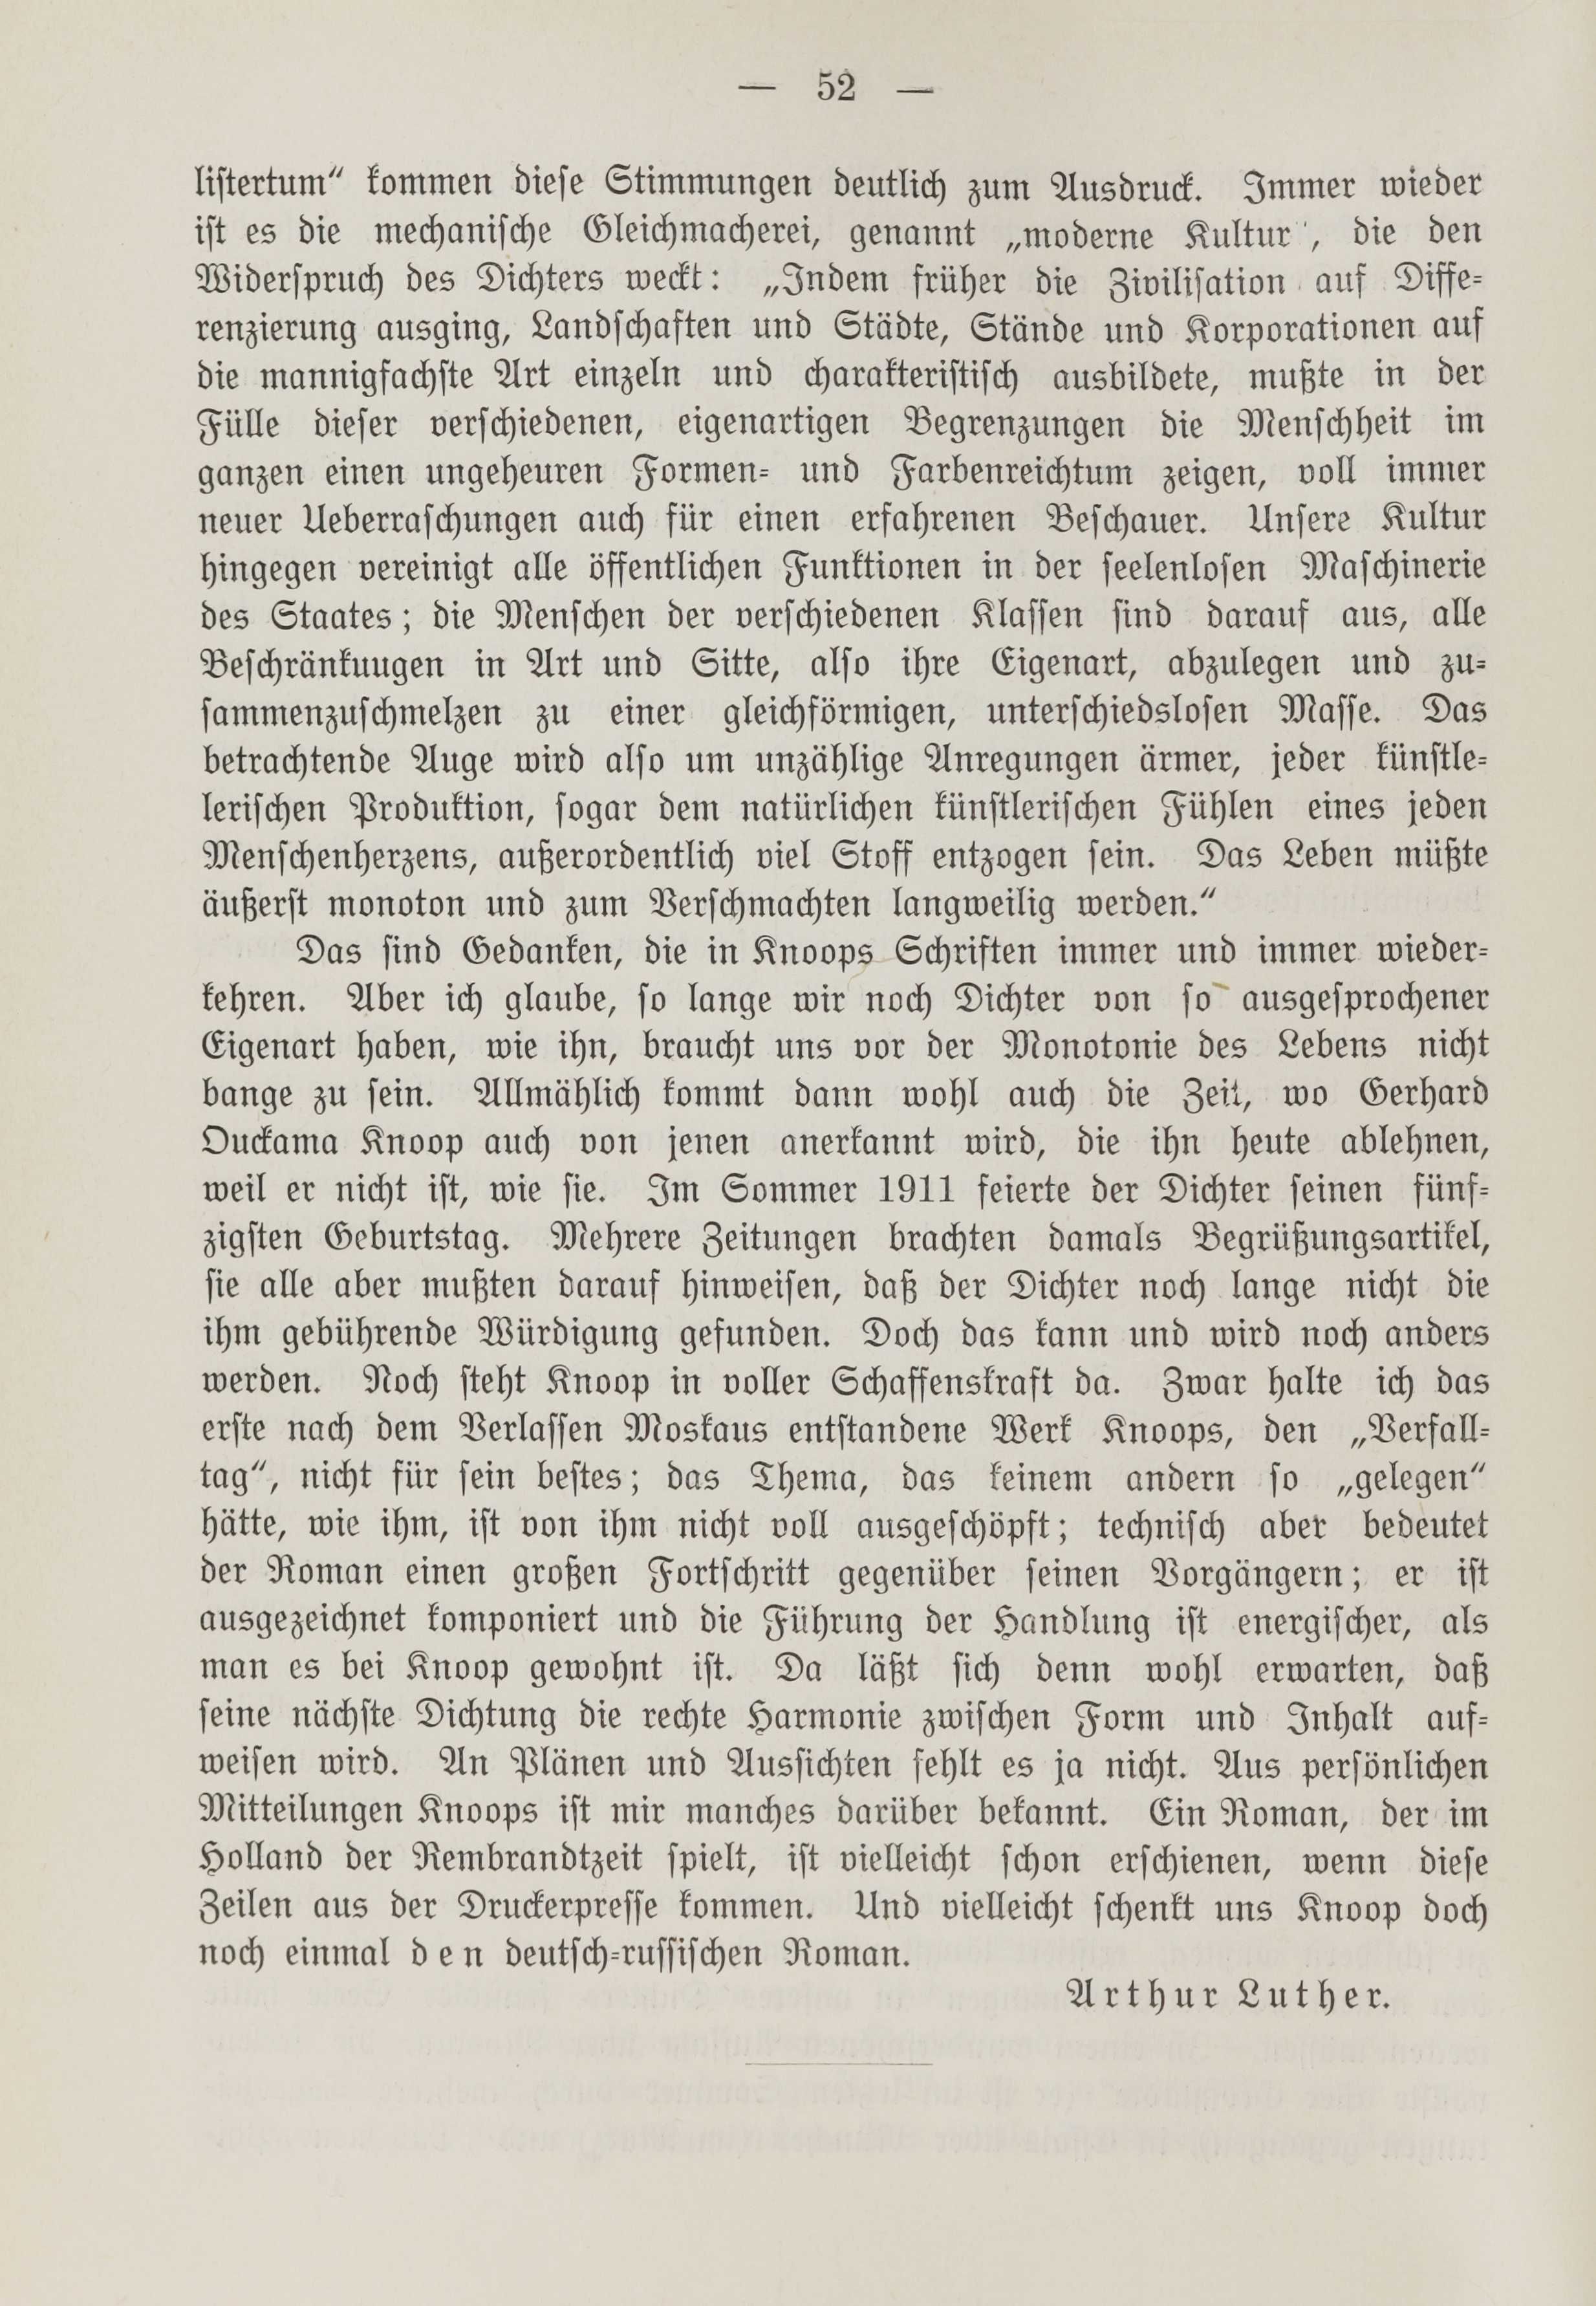 Deutsche Monatsschrift für Russland [1] (1912) | 59. (52) Main body of text